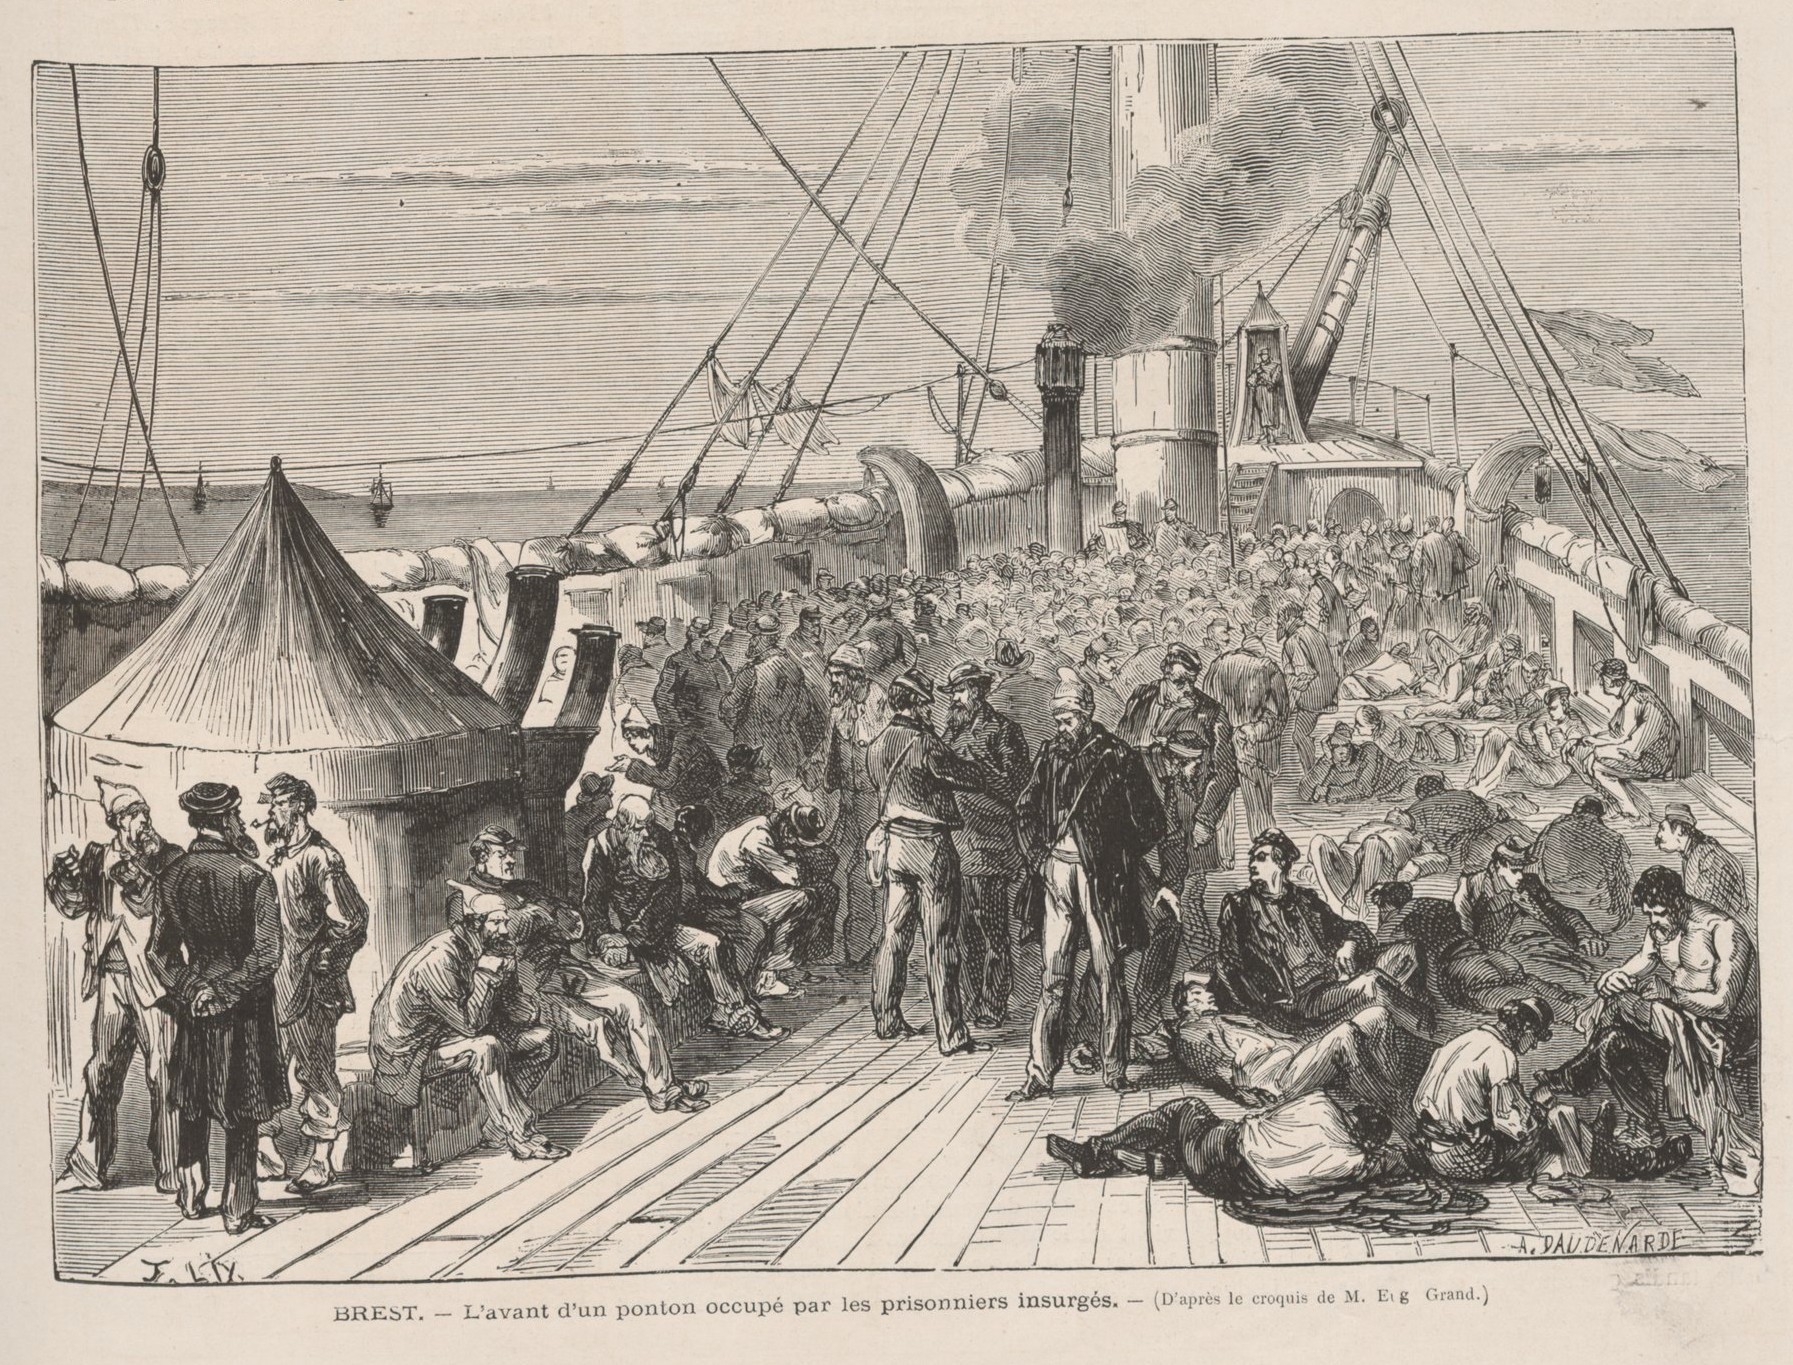 Ponton du Brest occupé par des prisonniers insurgés - Gravure de Lix d'après croquis de Grand (Collection Musée de l'Histoire Vivante - Montreuil)